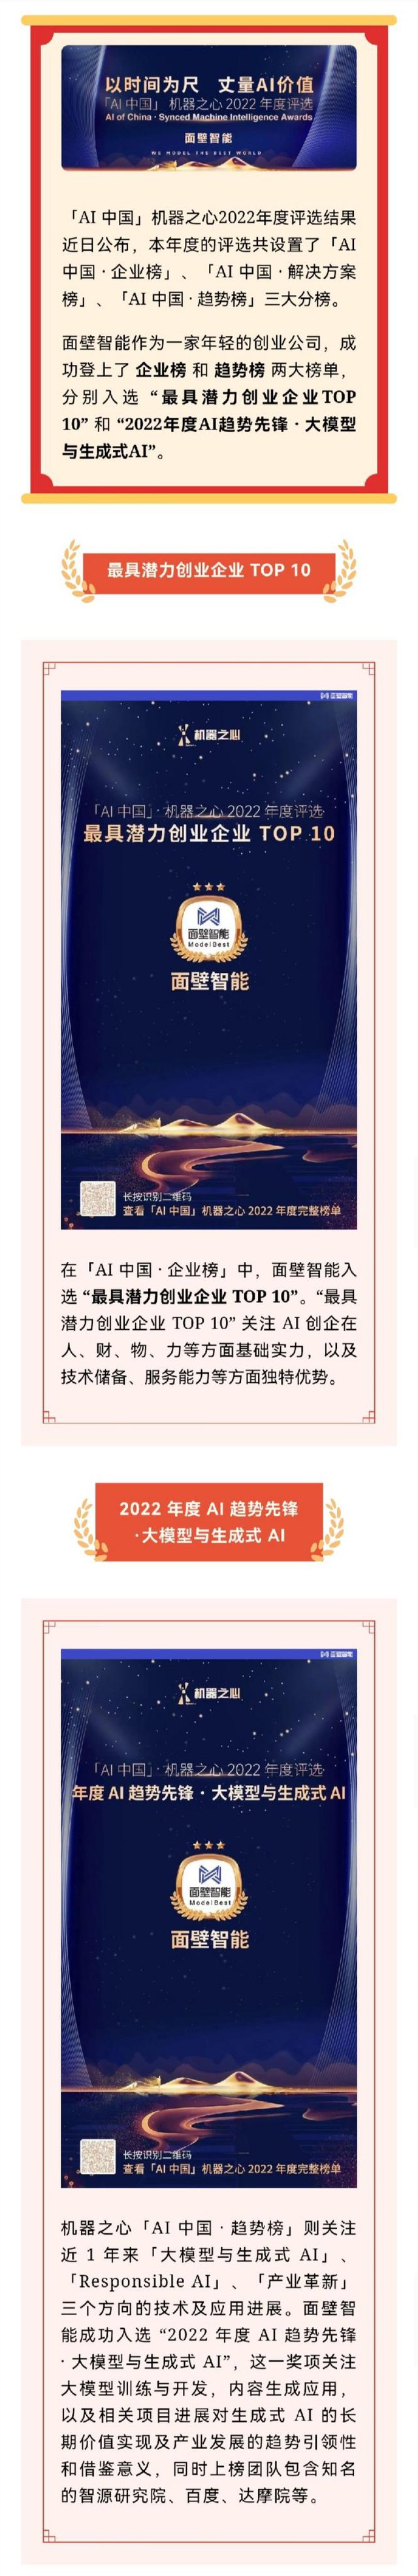 我组创业公司面壁智能获「AI中国」机器之心“最具潜力创业企业TOP 10”等奖项1.jpg